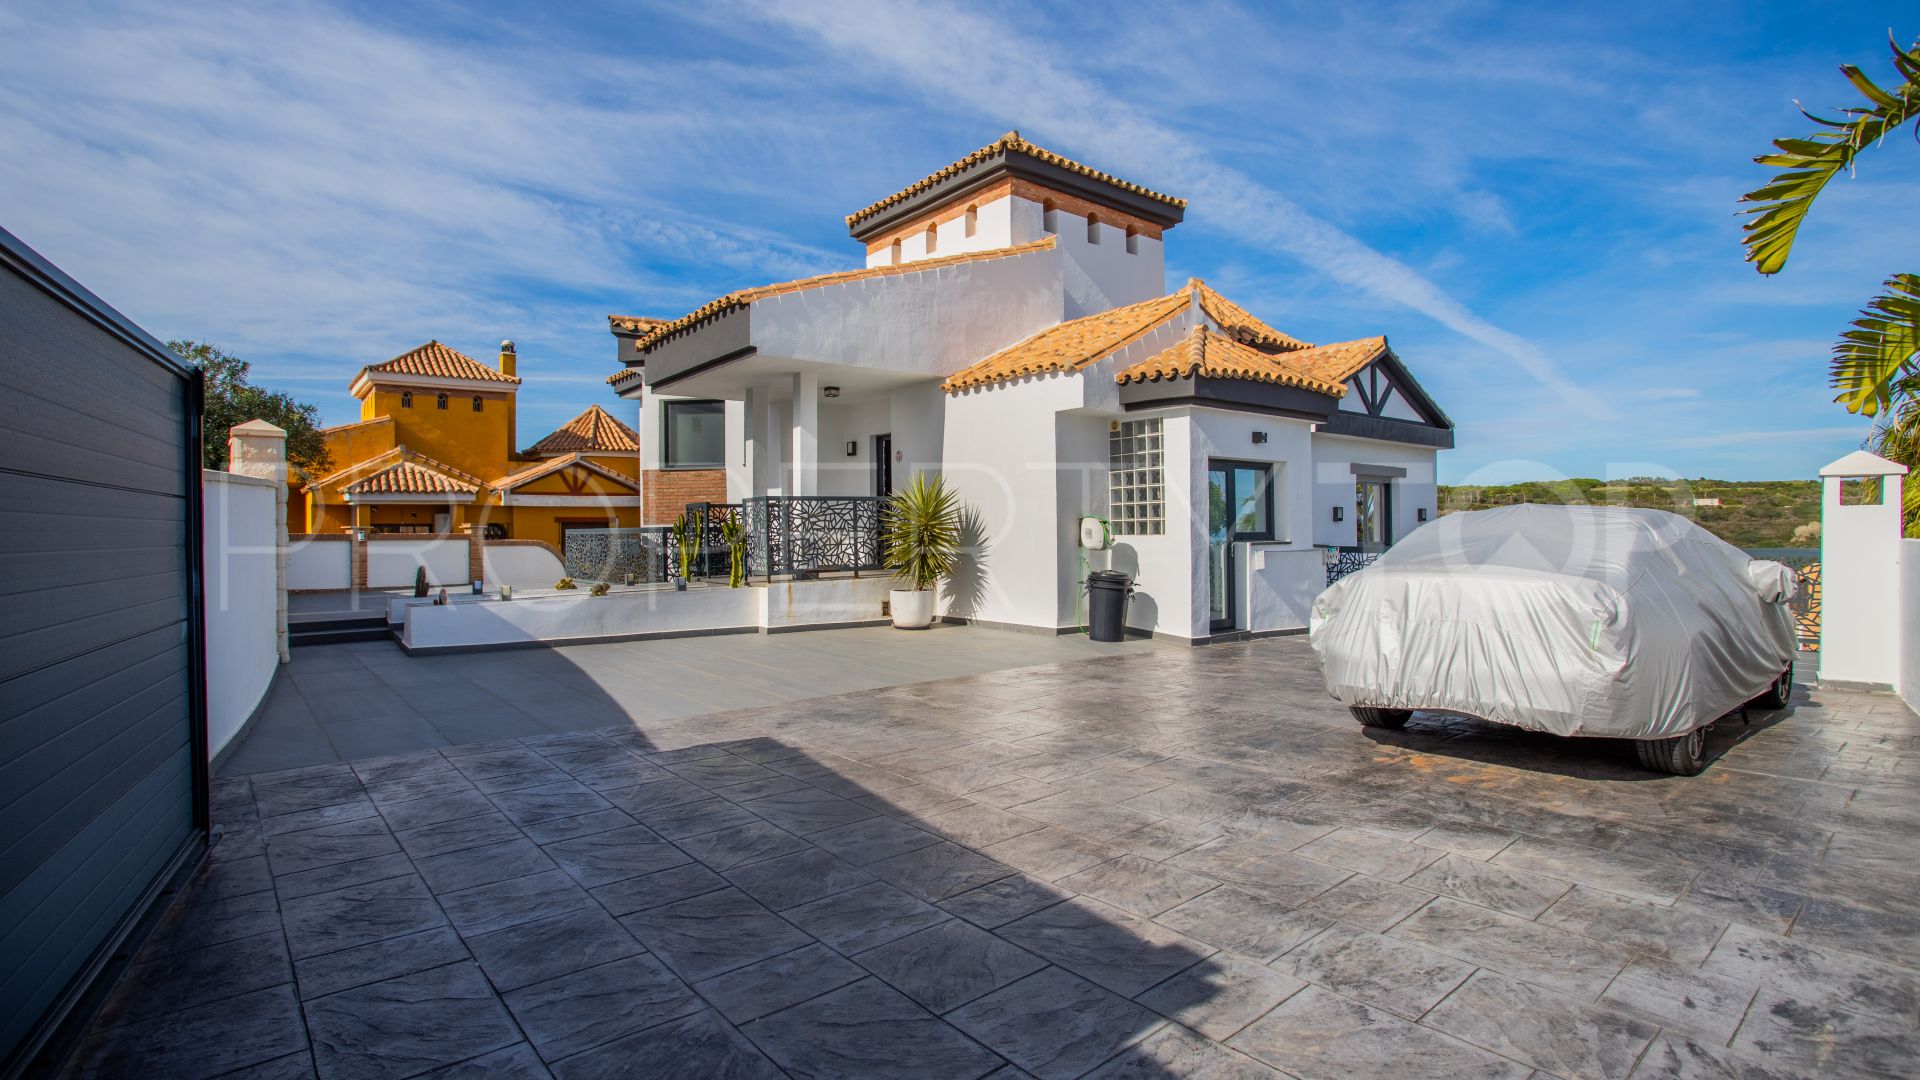 For sale Alcaidesa Costa villa with 4 bedrooms